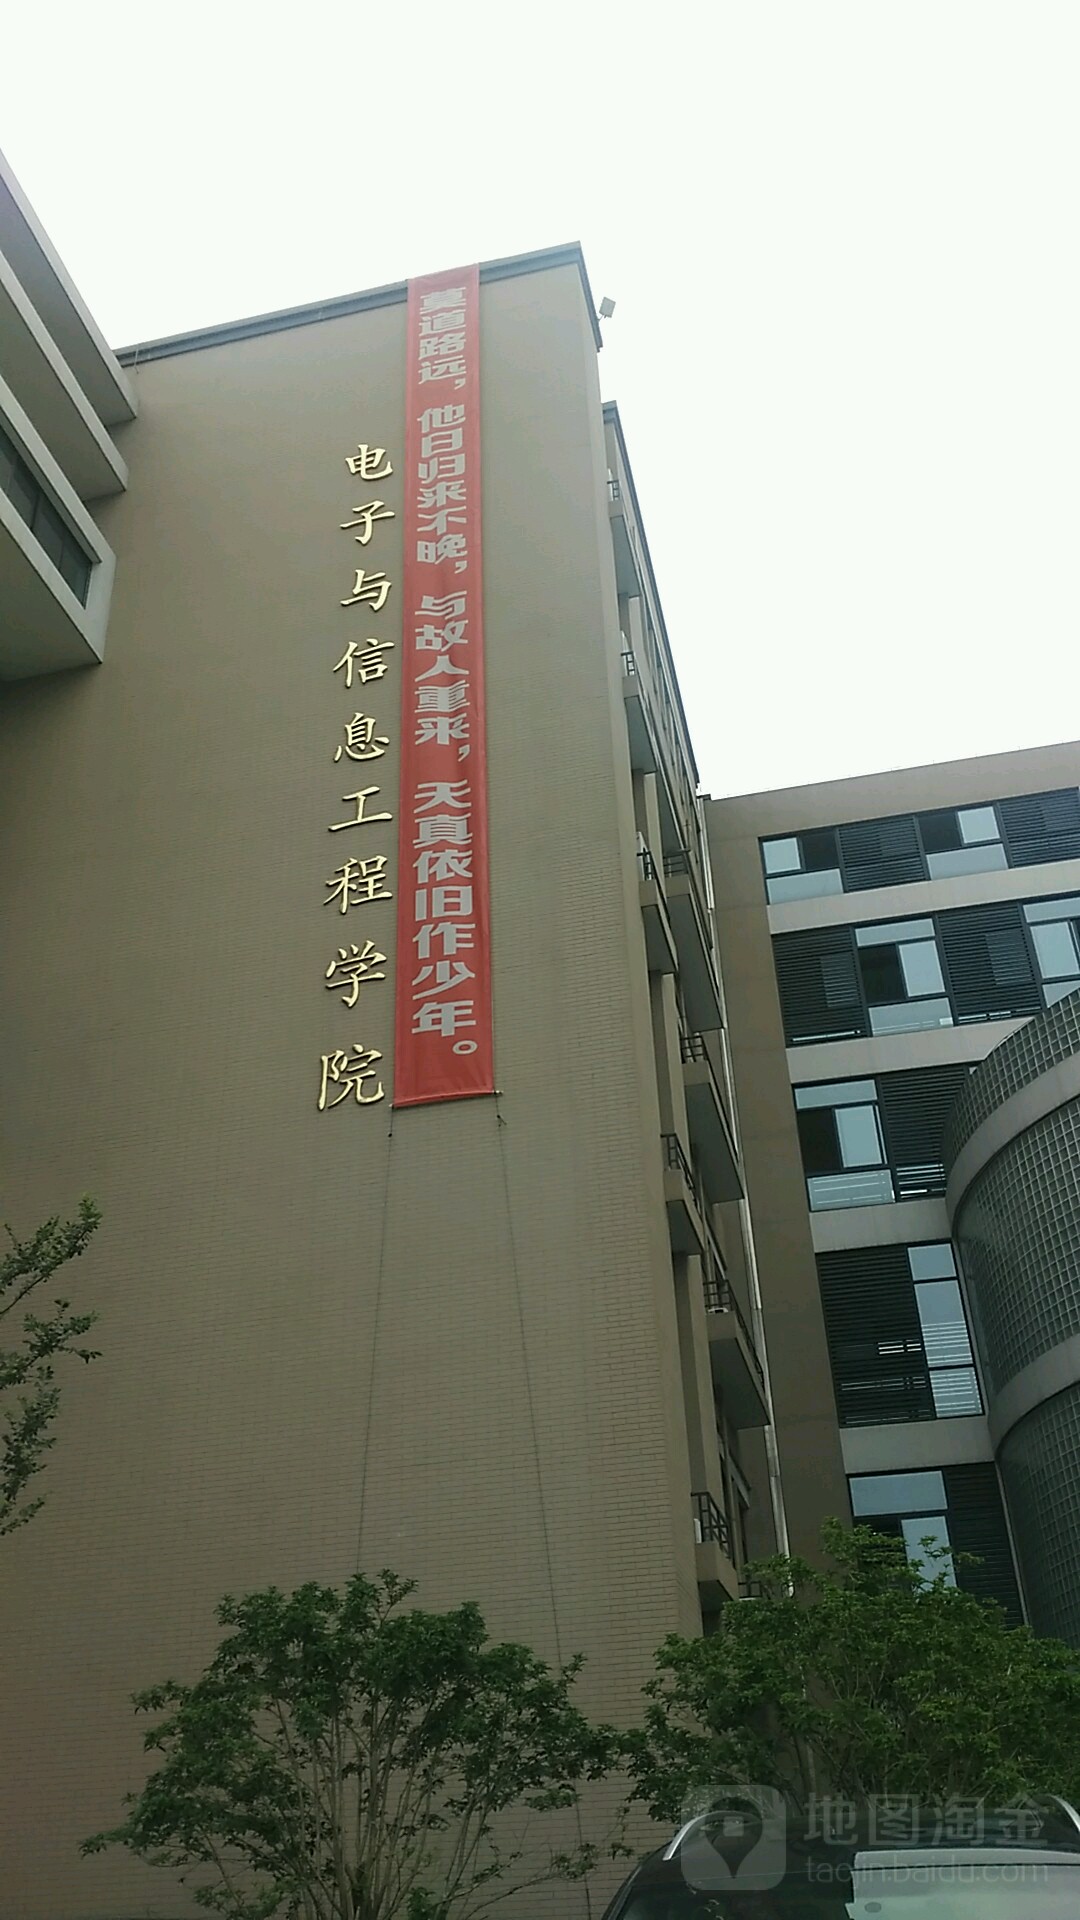 寧波工程學院東校區-電子與信息工程學院